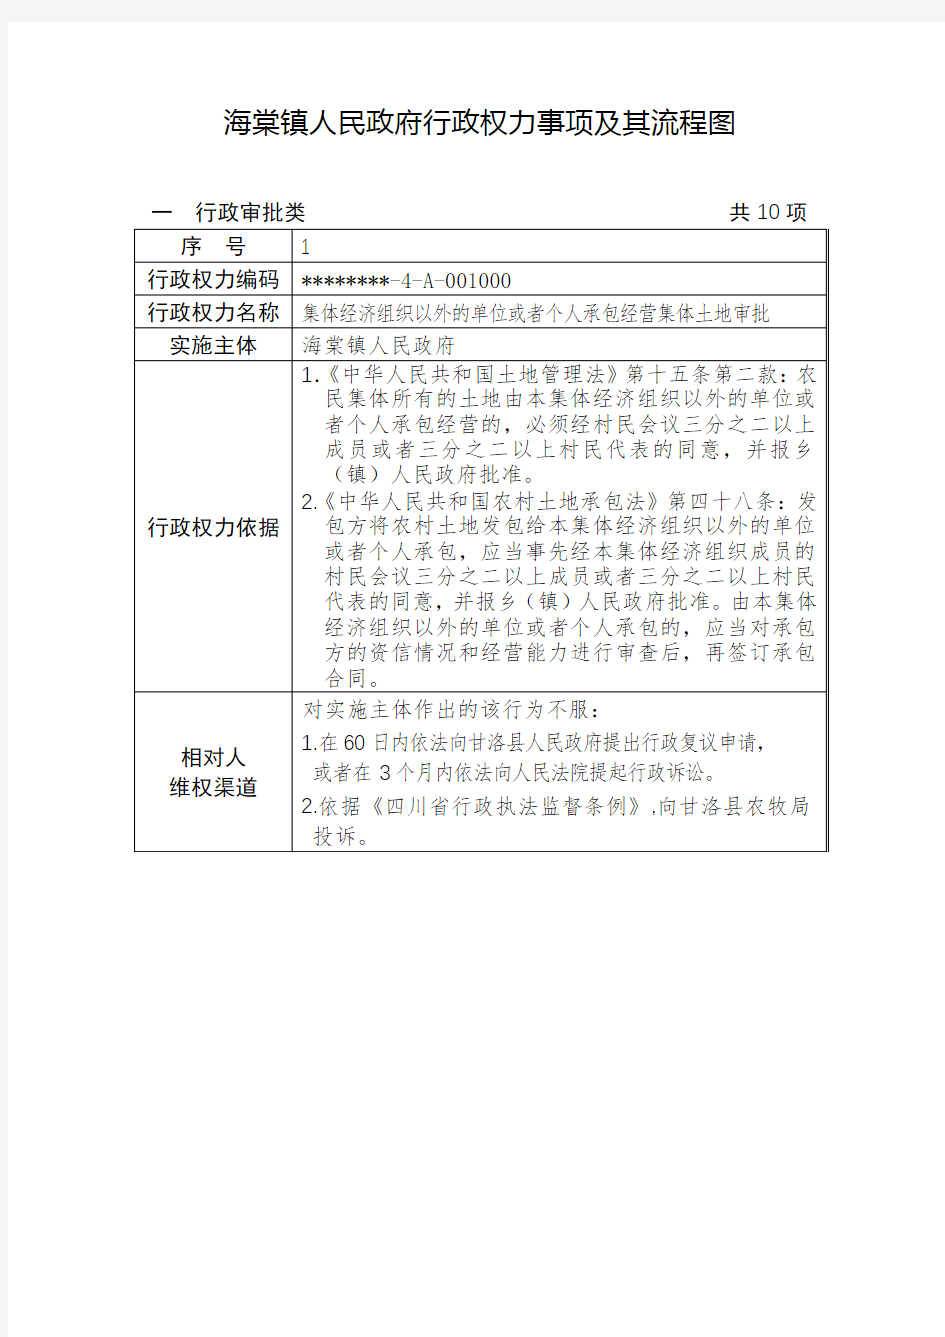 海棠镇人民政府行政权力事项及其流程图【模板】